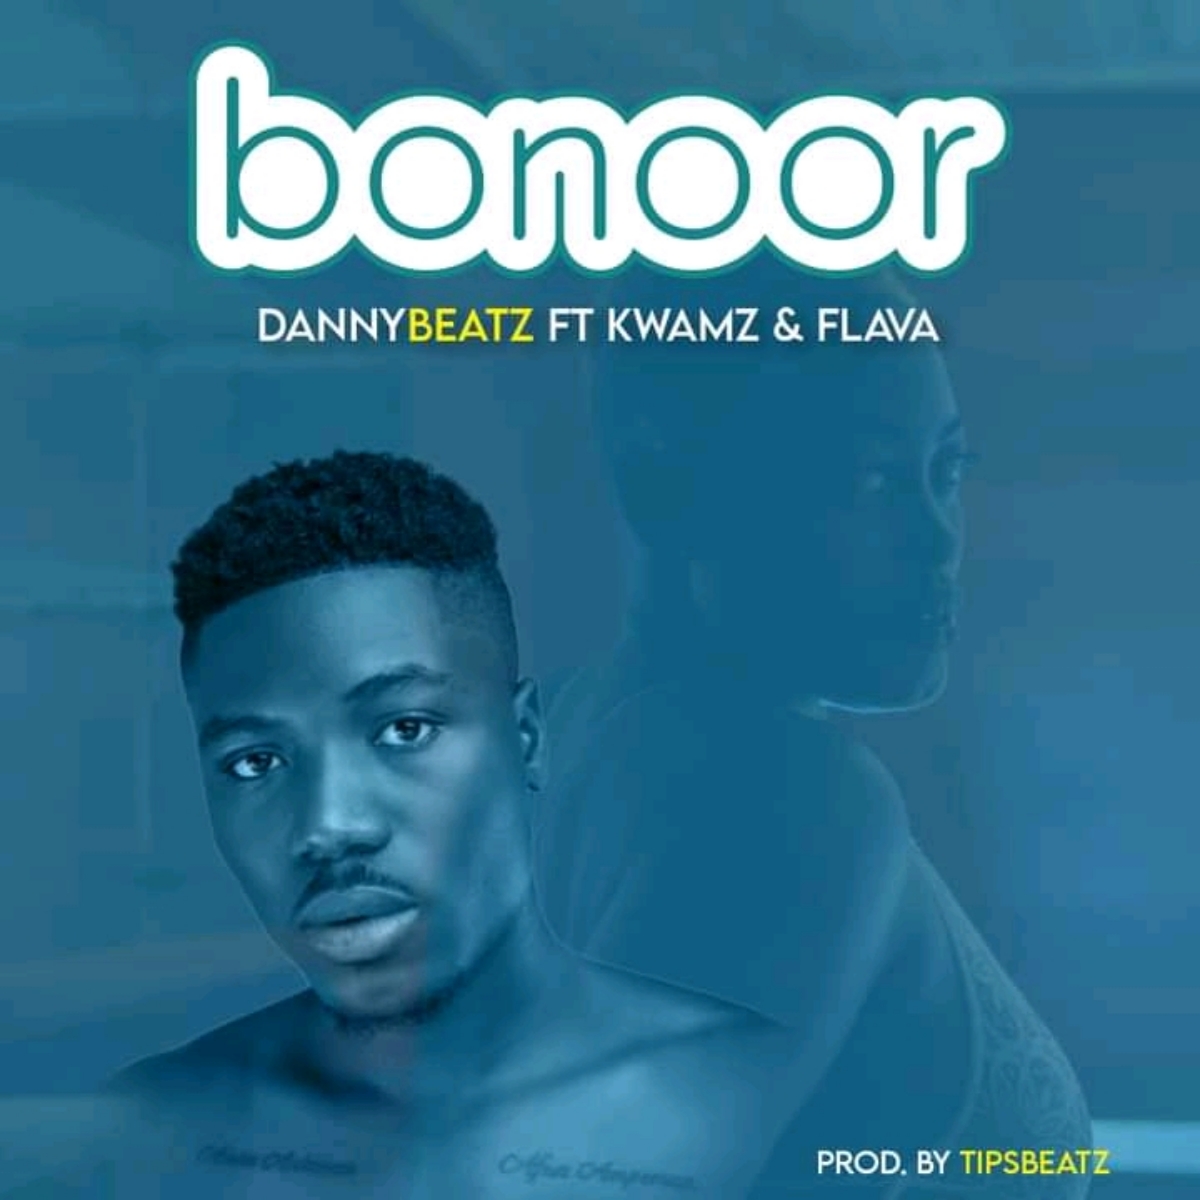 Danny Beatz – Bonoor Ft. Kwamz, Flava mp3 download